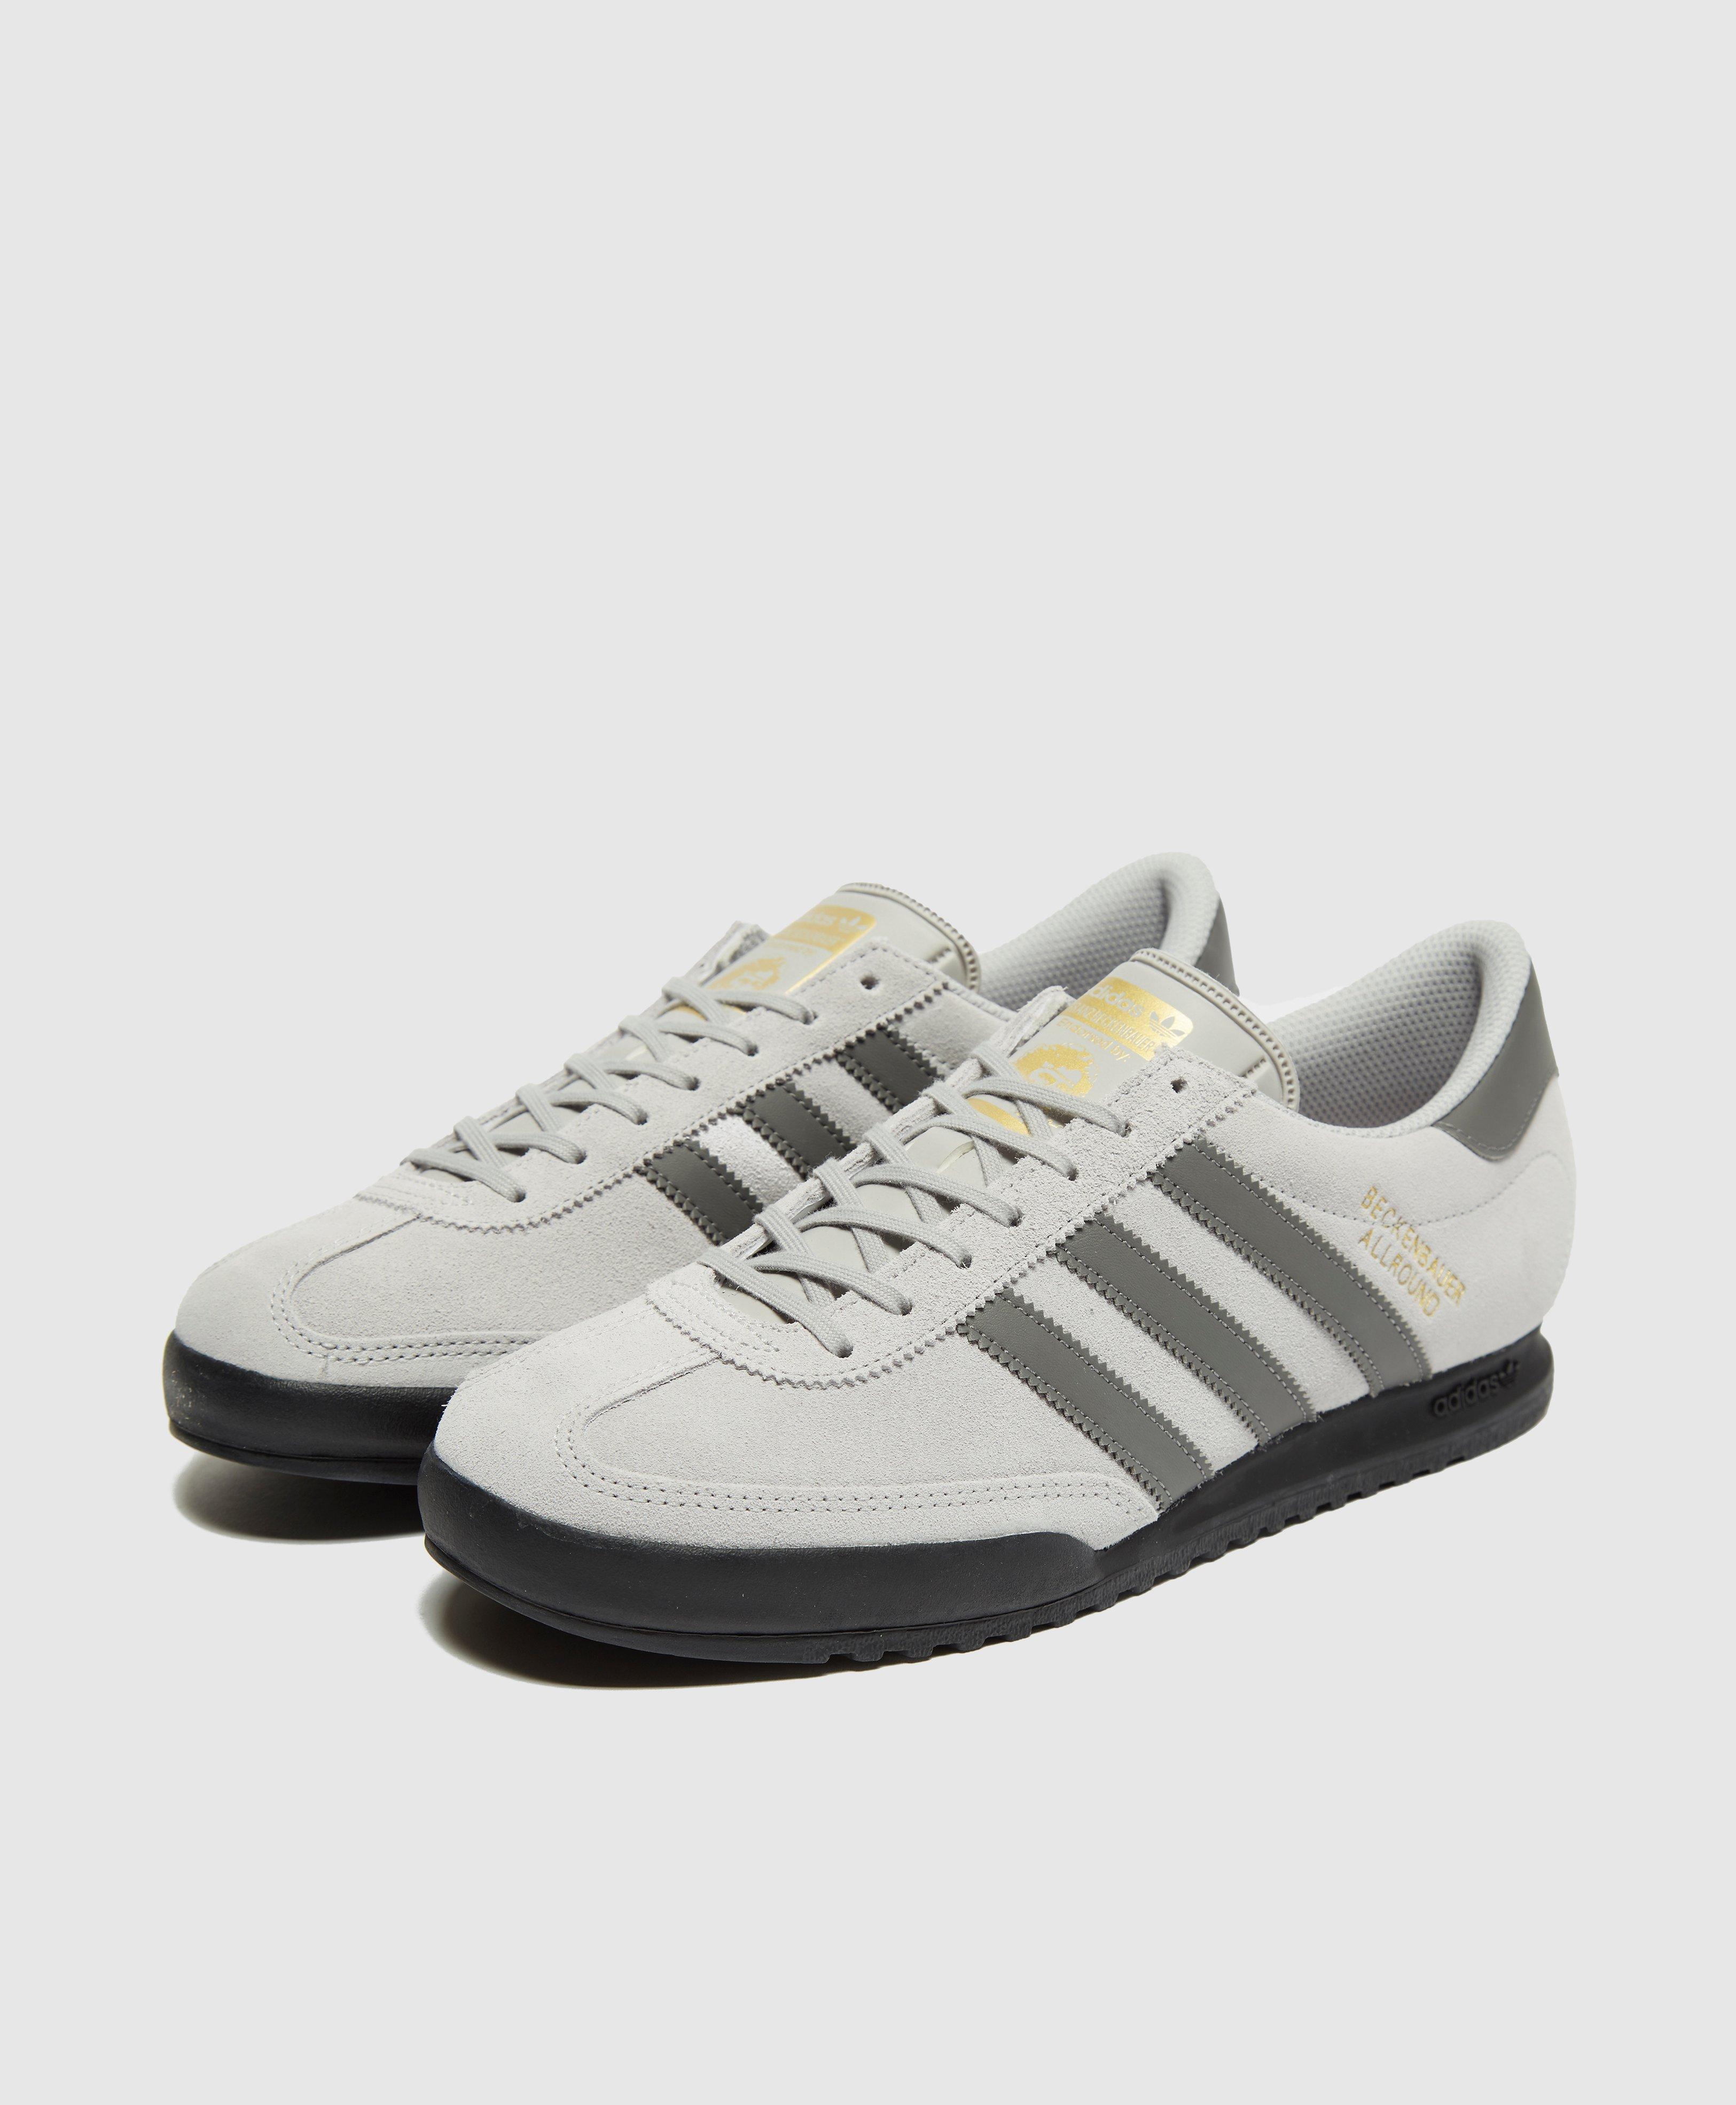 adidas Originals Beckenbauer | scotts Menswear